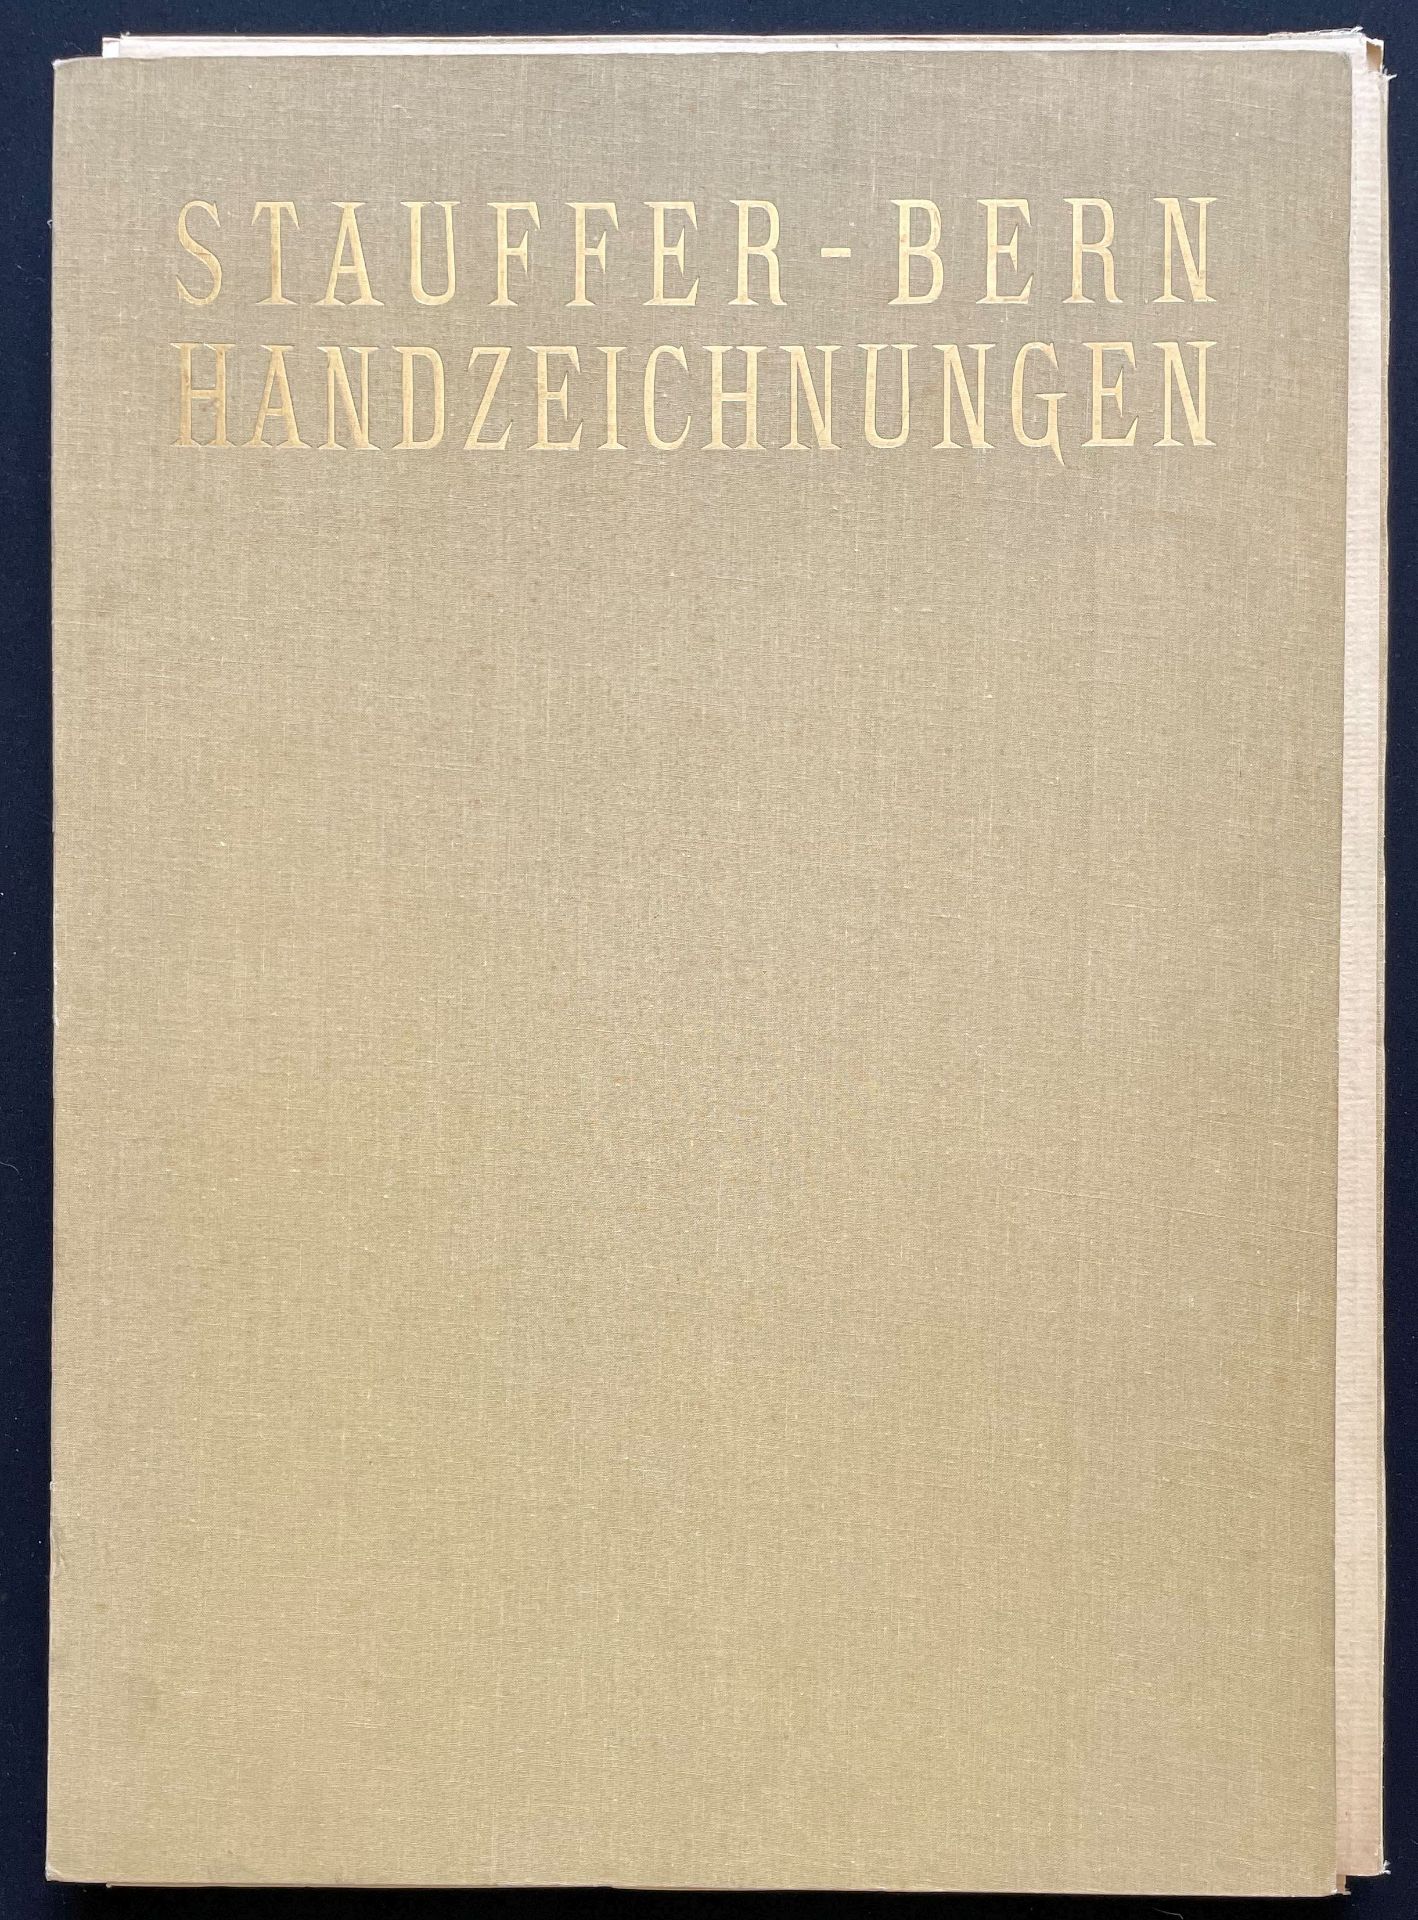 Karl Stauffer-Bern (1857-1891), Mappe mit 38 Faksimiledrucken: männliche und weibliche Akte sowie Po